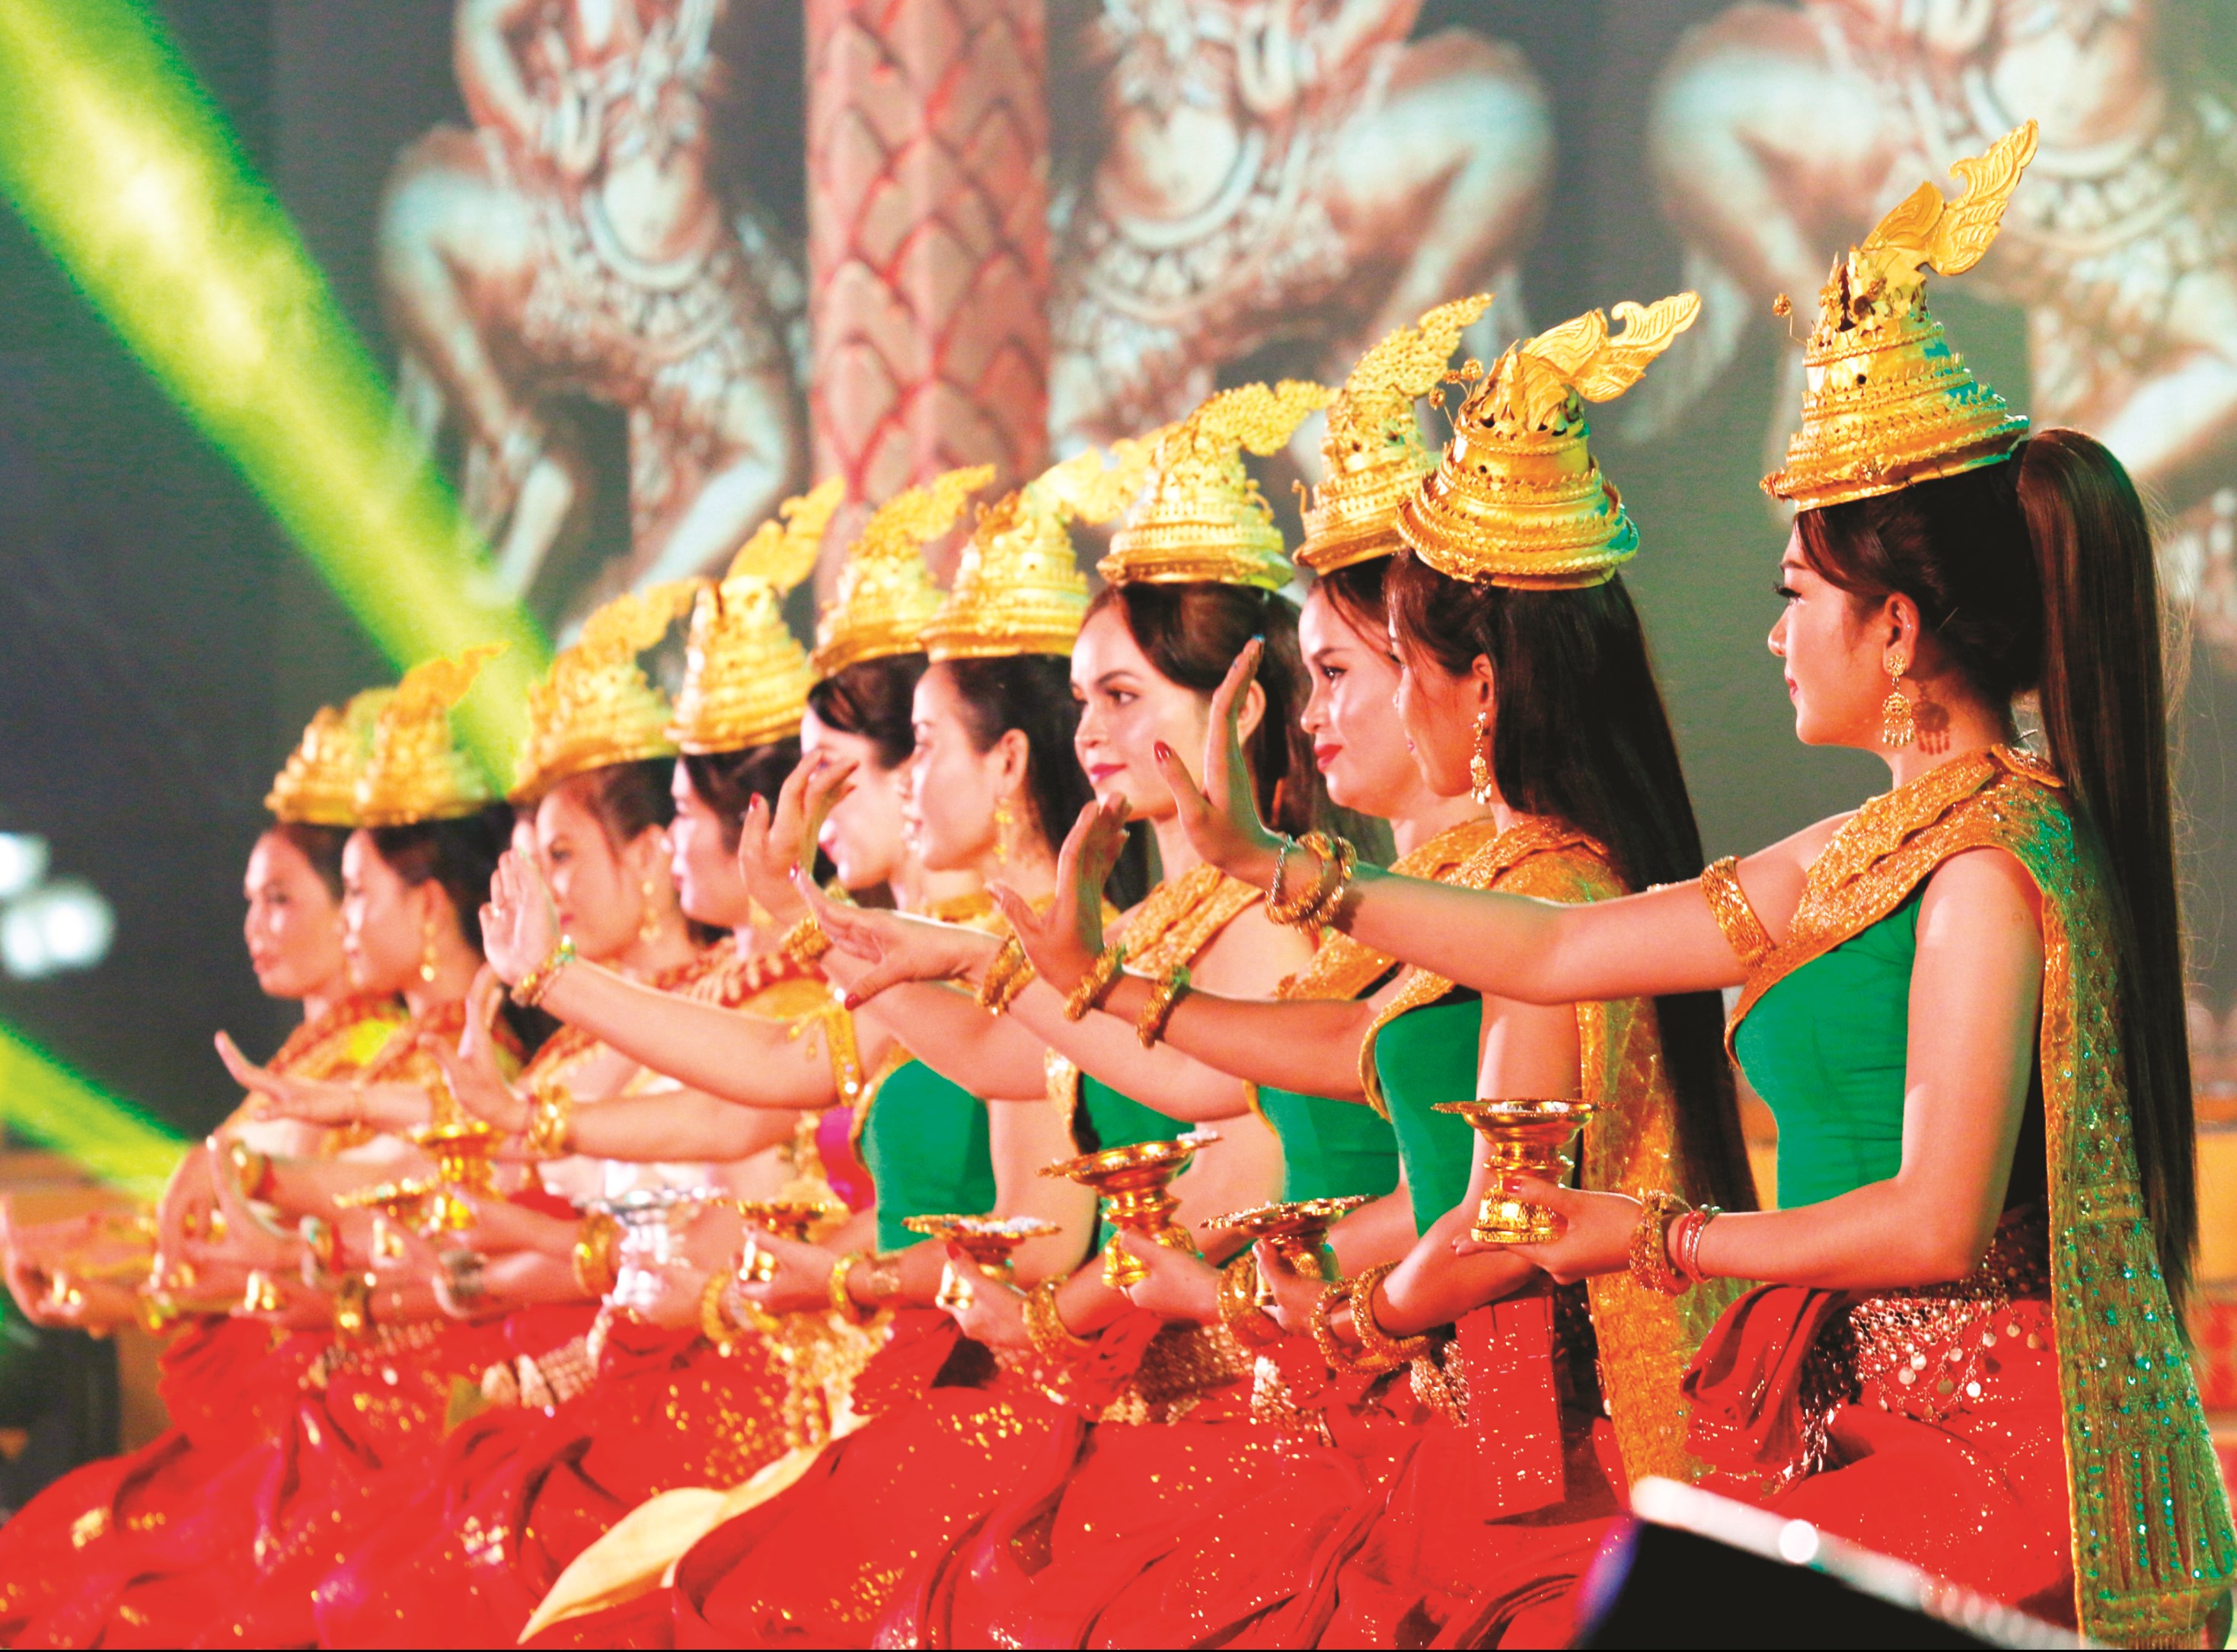 Múa Apsara truyền thống của người Khmer là một trong những vũ điệu cung đình độc đáo, ấn tượng